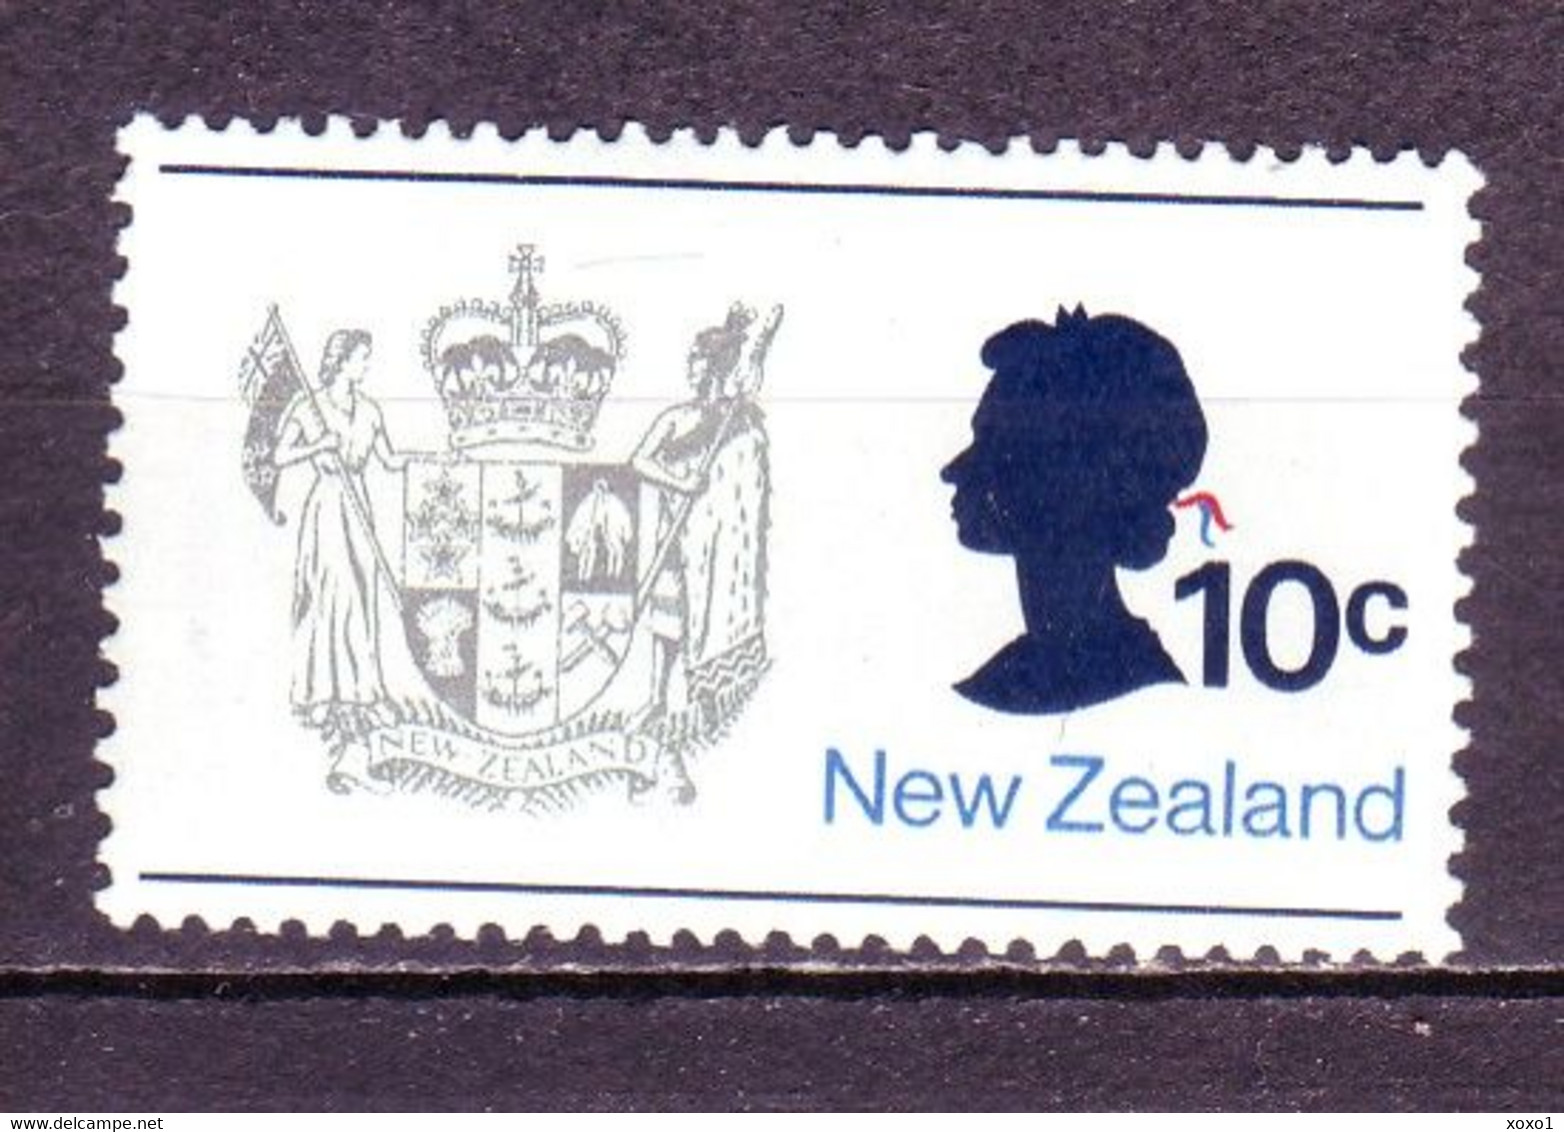 New Zealand 1970 MiNr. 518  Neuseeland  National Coat Of Arms, Queen Elizabeth II  1v MNH**  0,60 € - Ongebruikt